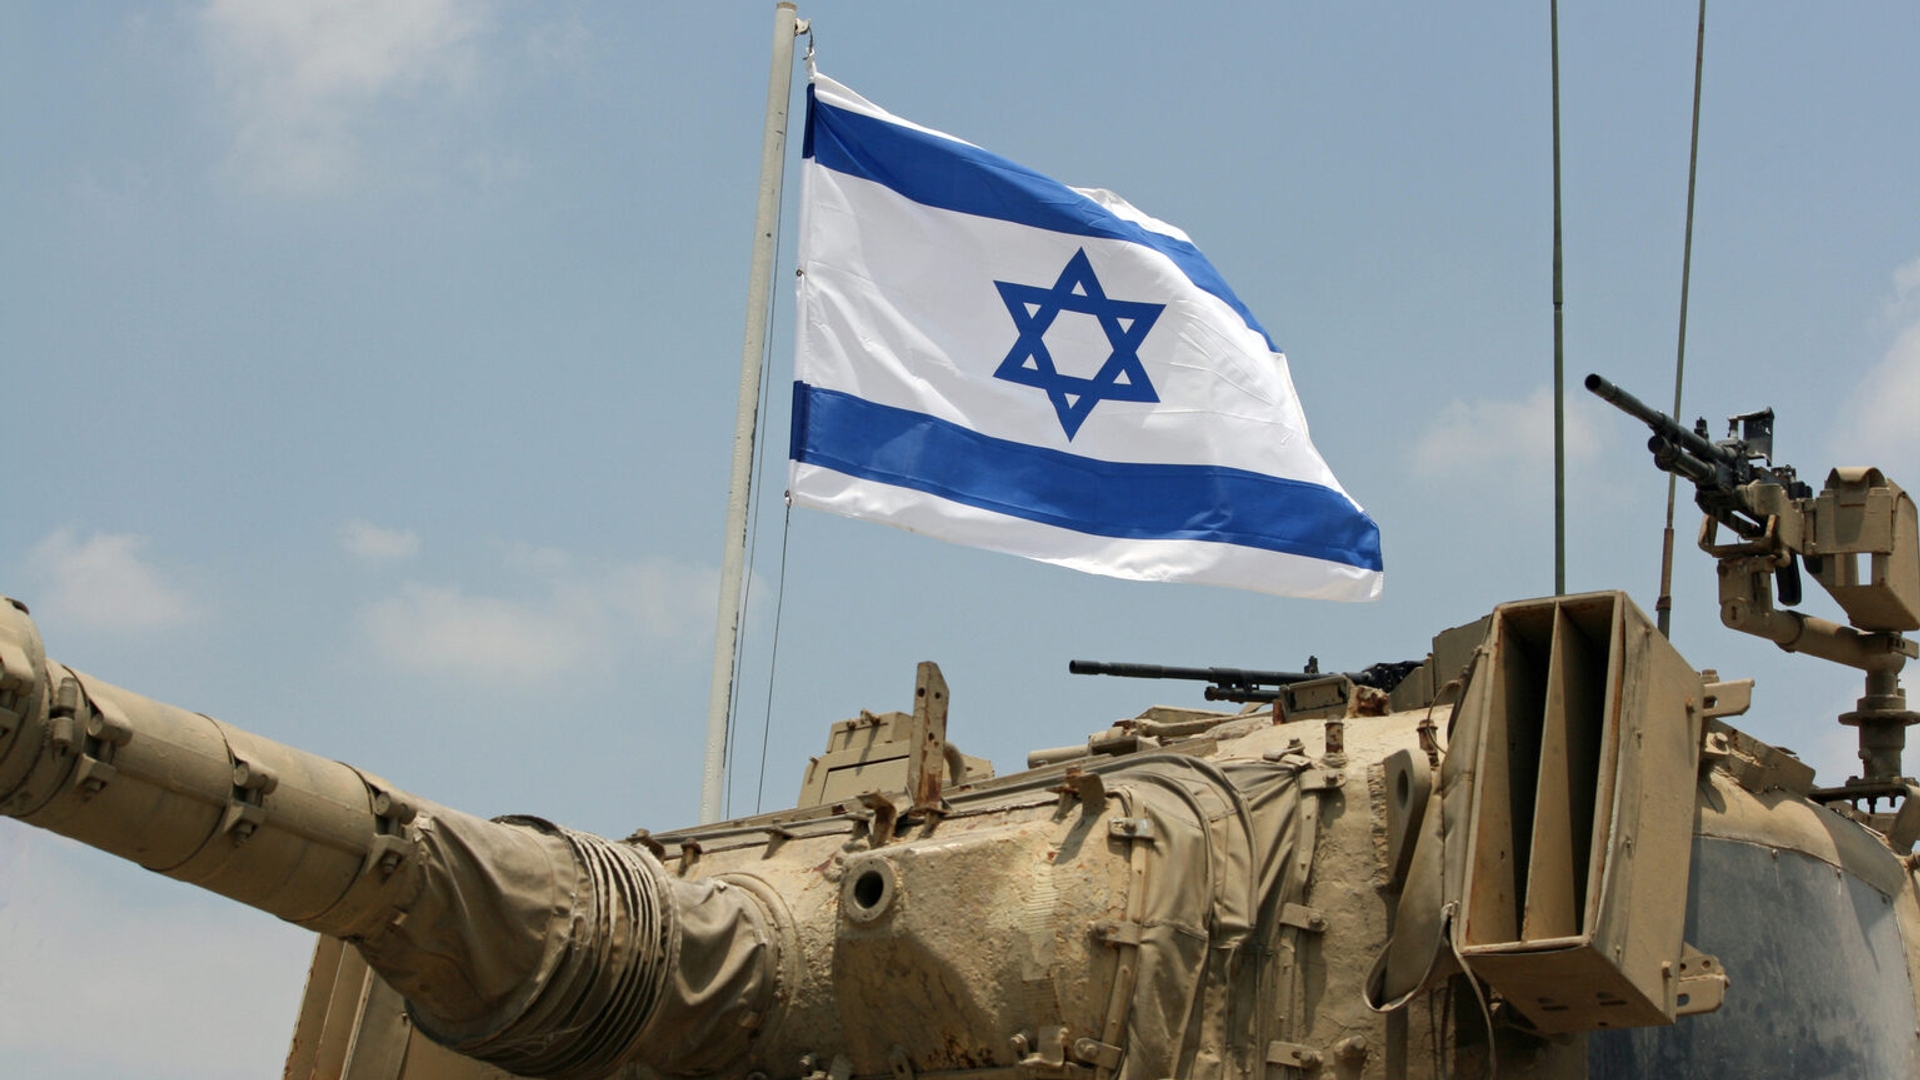 israelische-tank-lupovich-istockphoto-1536x1024